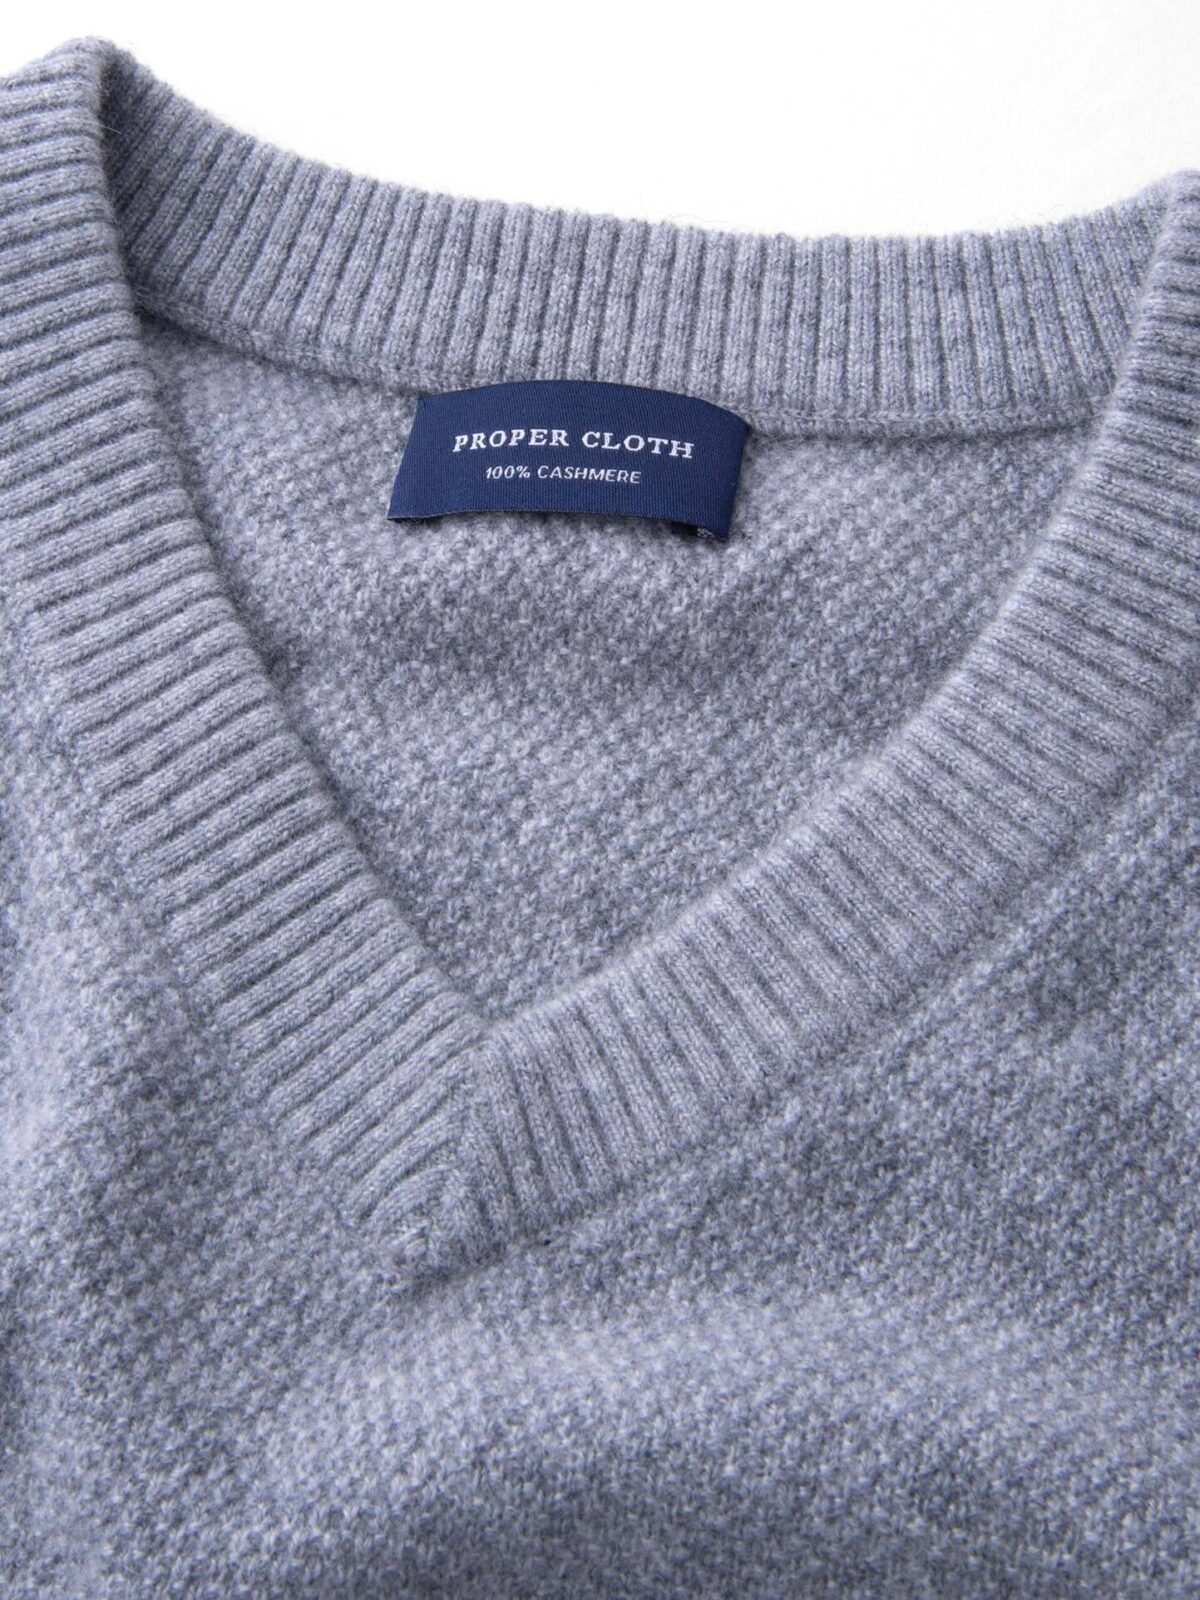 Light Grey Cobble Stitch Cashmere V-Neck Sweater